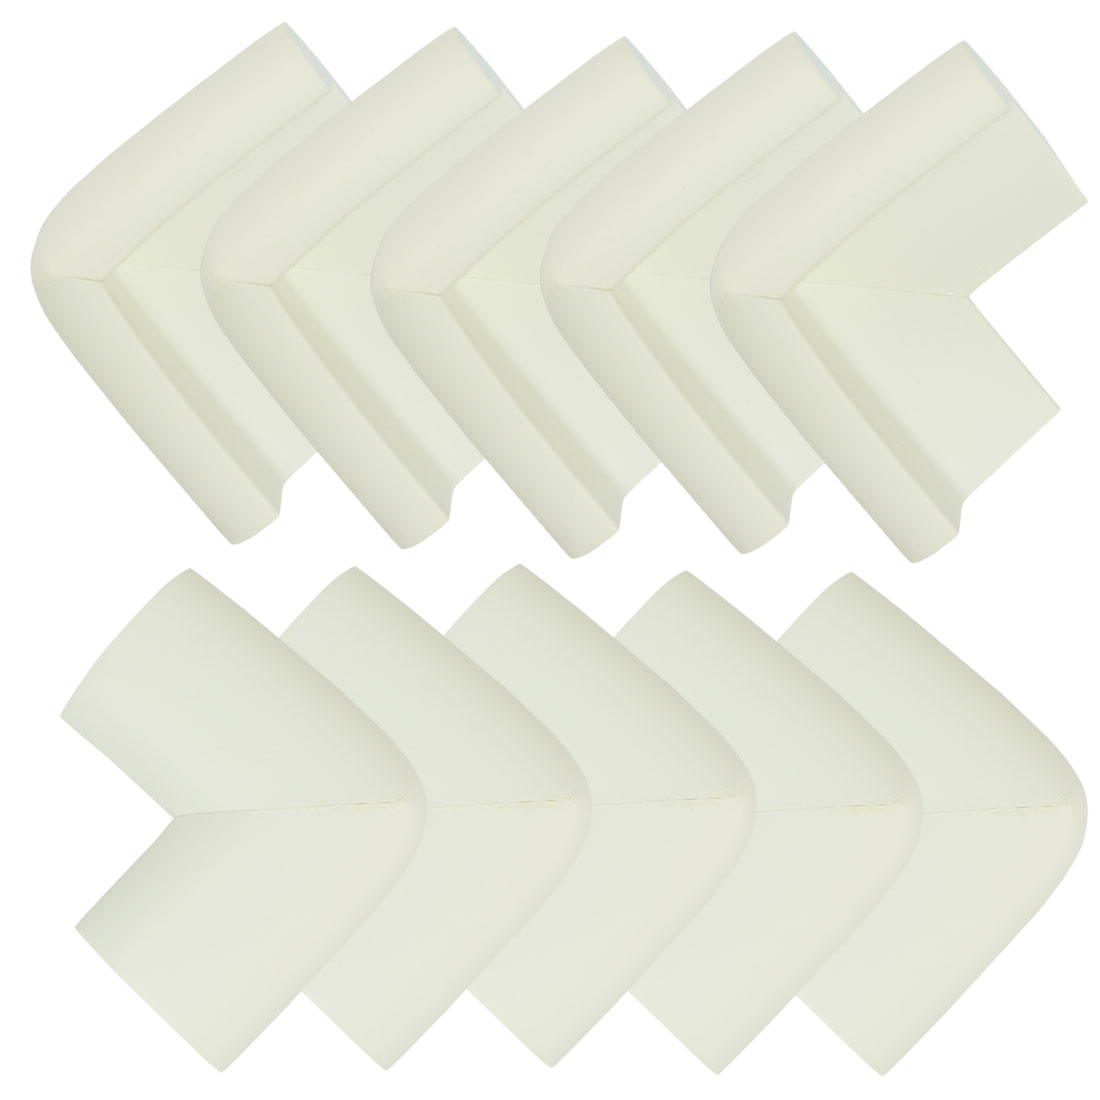 Unique Bargains Desk Table Edge Foam Corner Cushion Guards Soft Bumper Protector 10pcs White